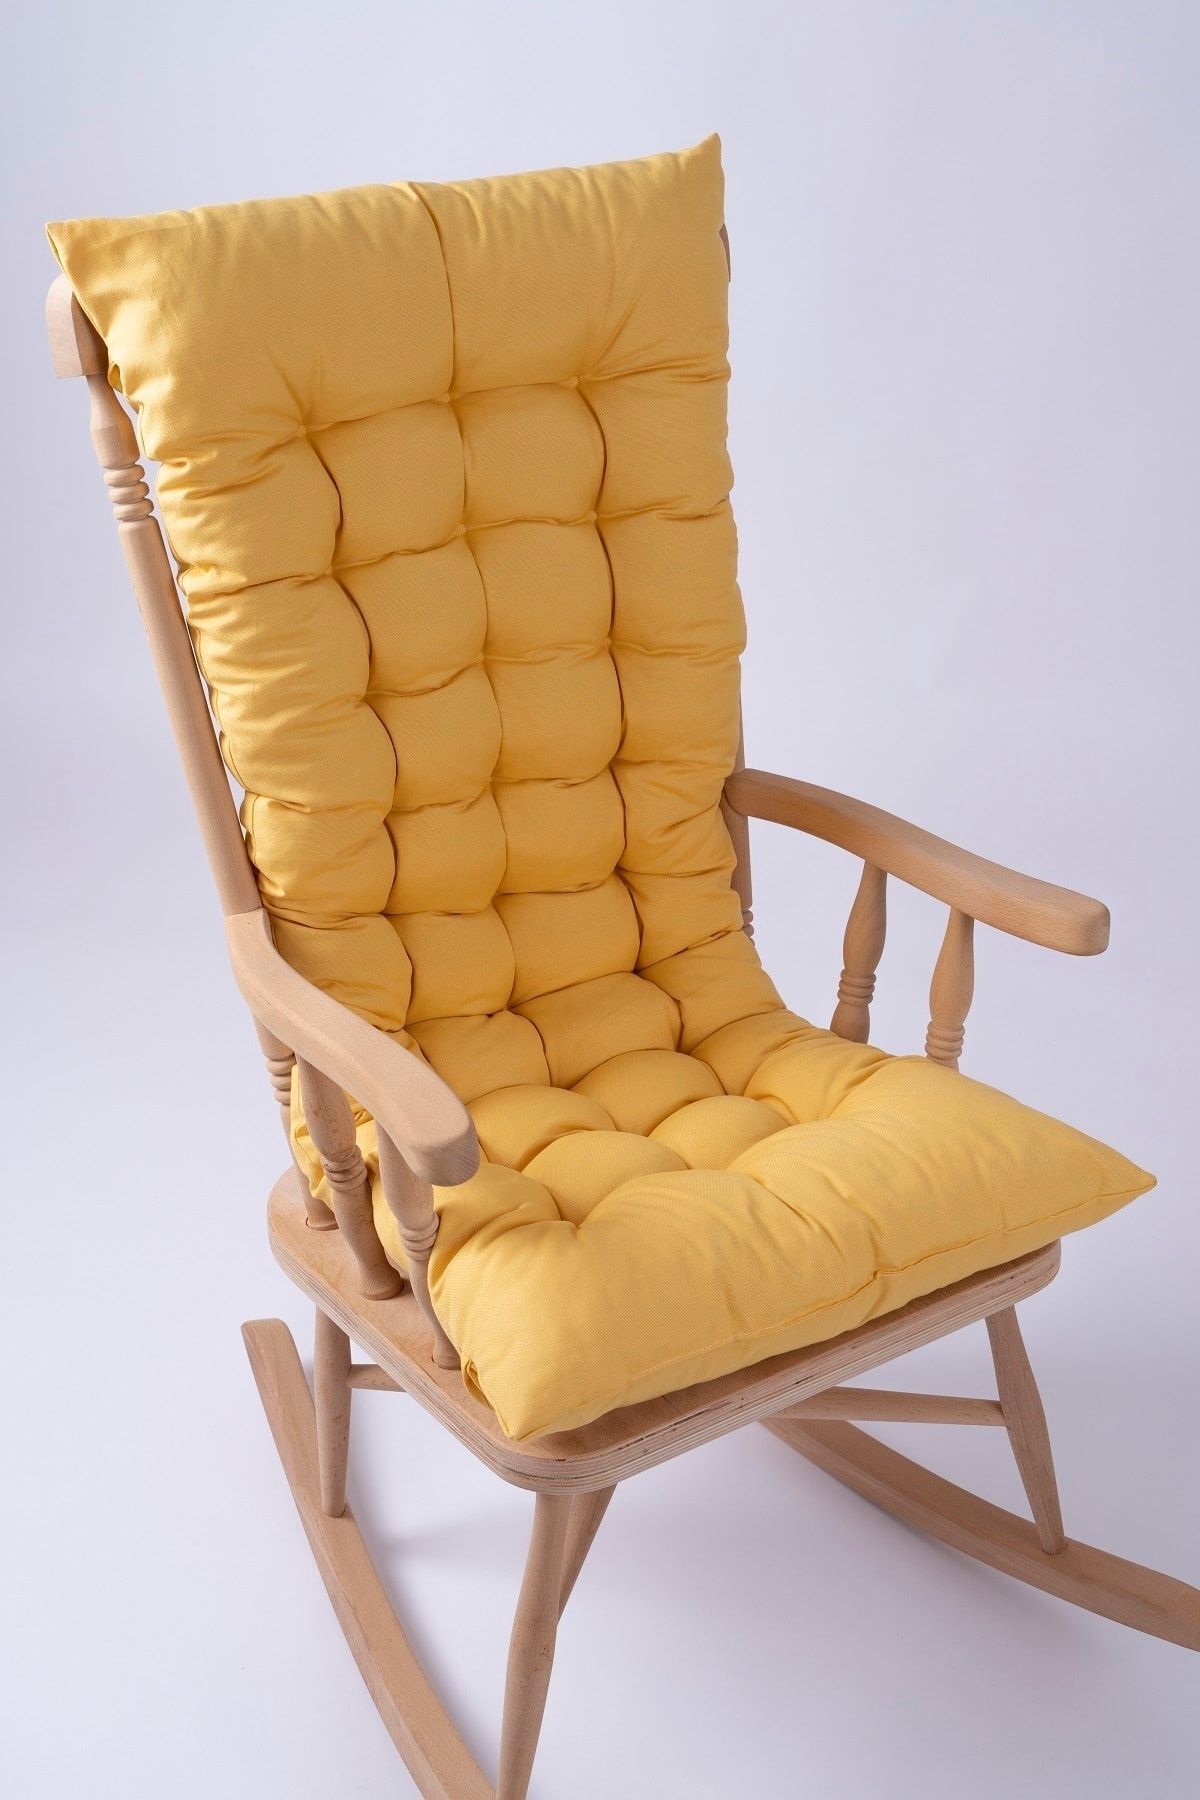 ALTINPAMUK Selen Lüx Sallanan Sandalye, Bank, Salıncak Minderi 120x50cm Sarı (SADECE MİNDER)